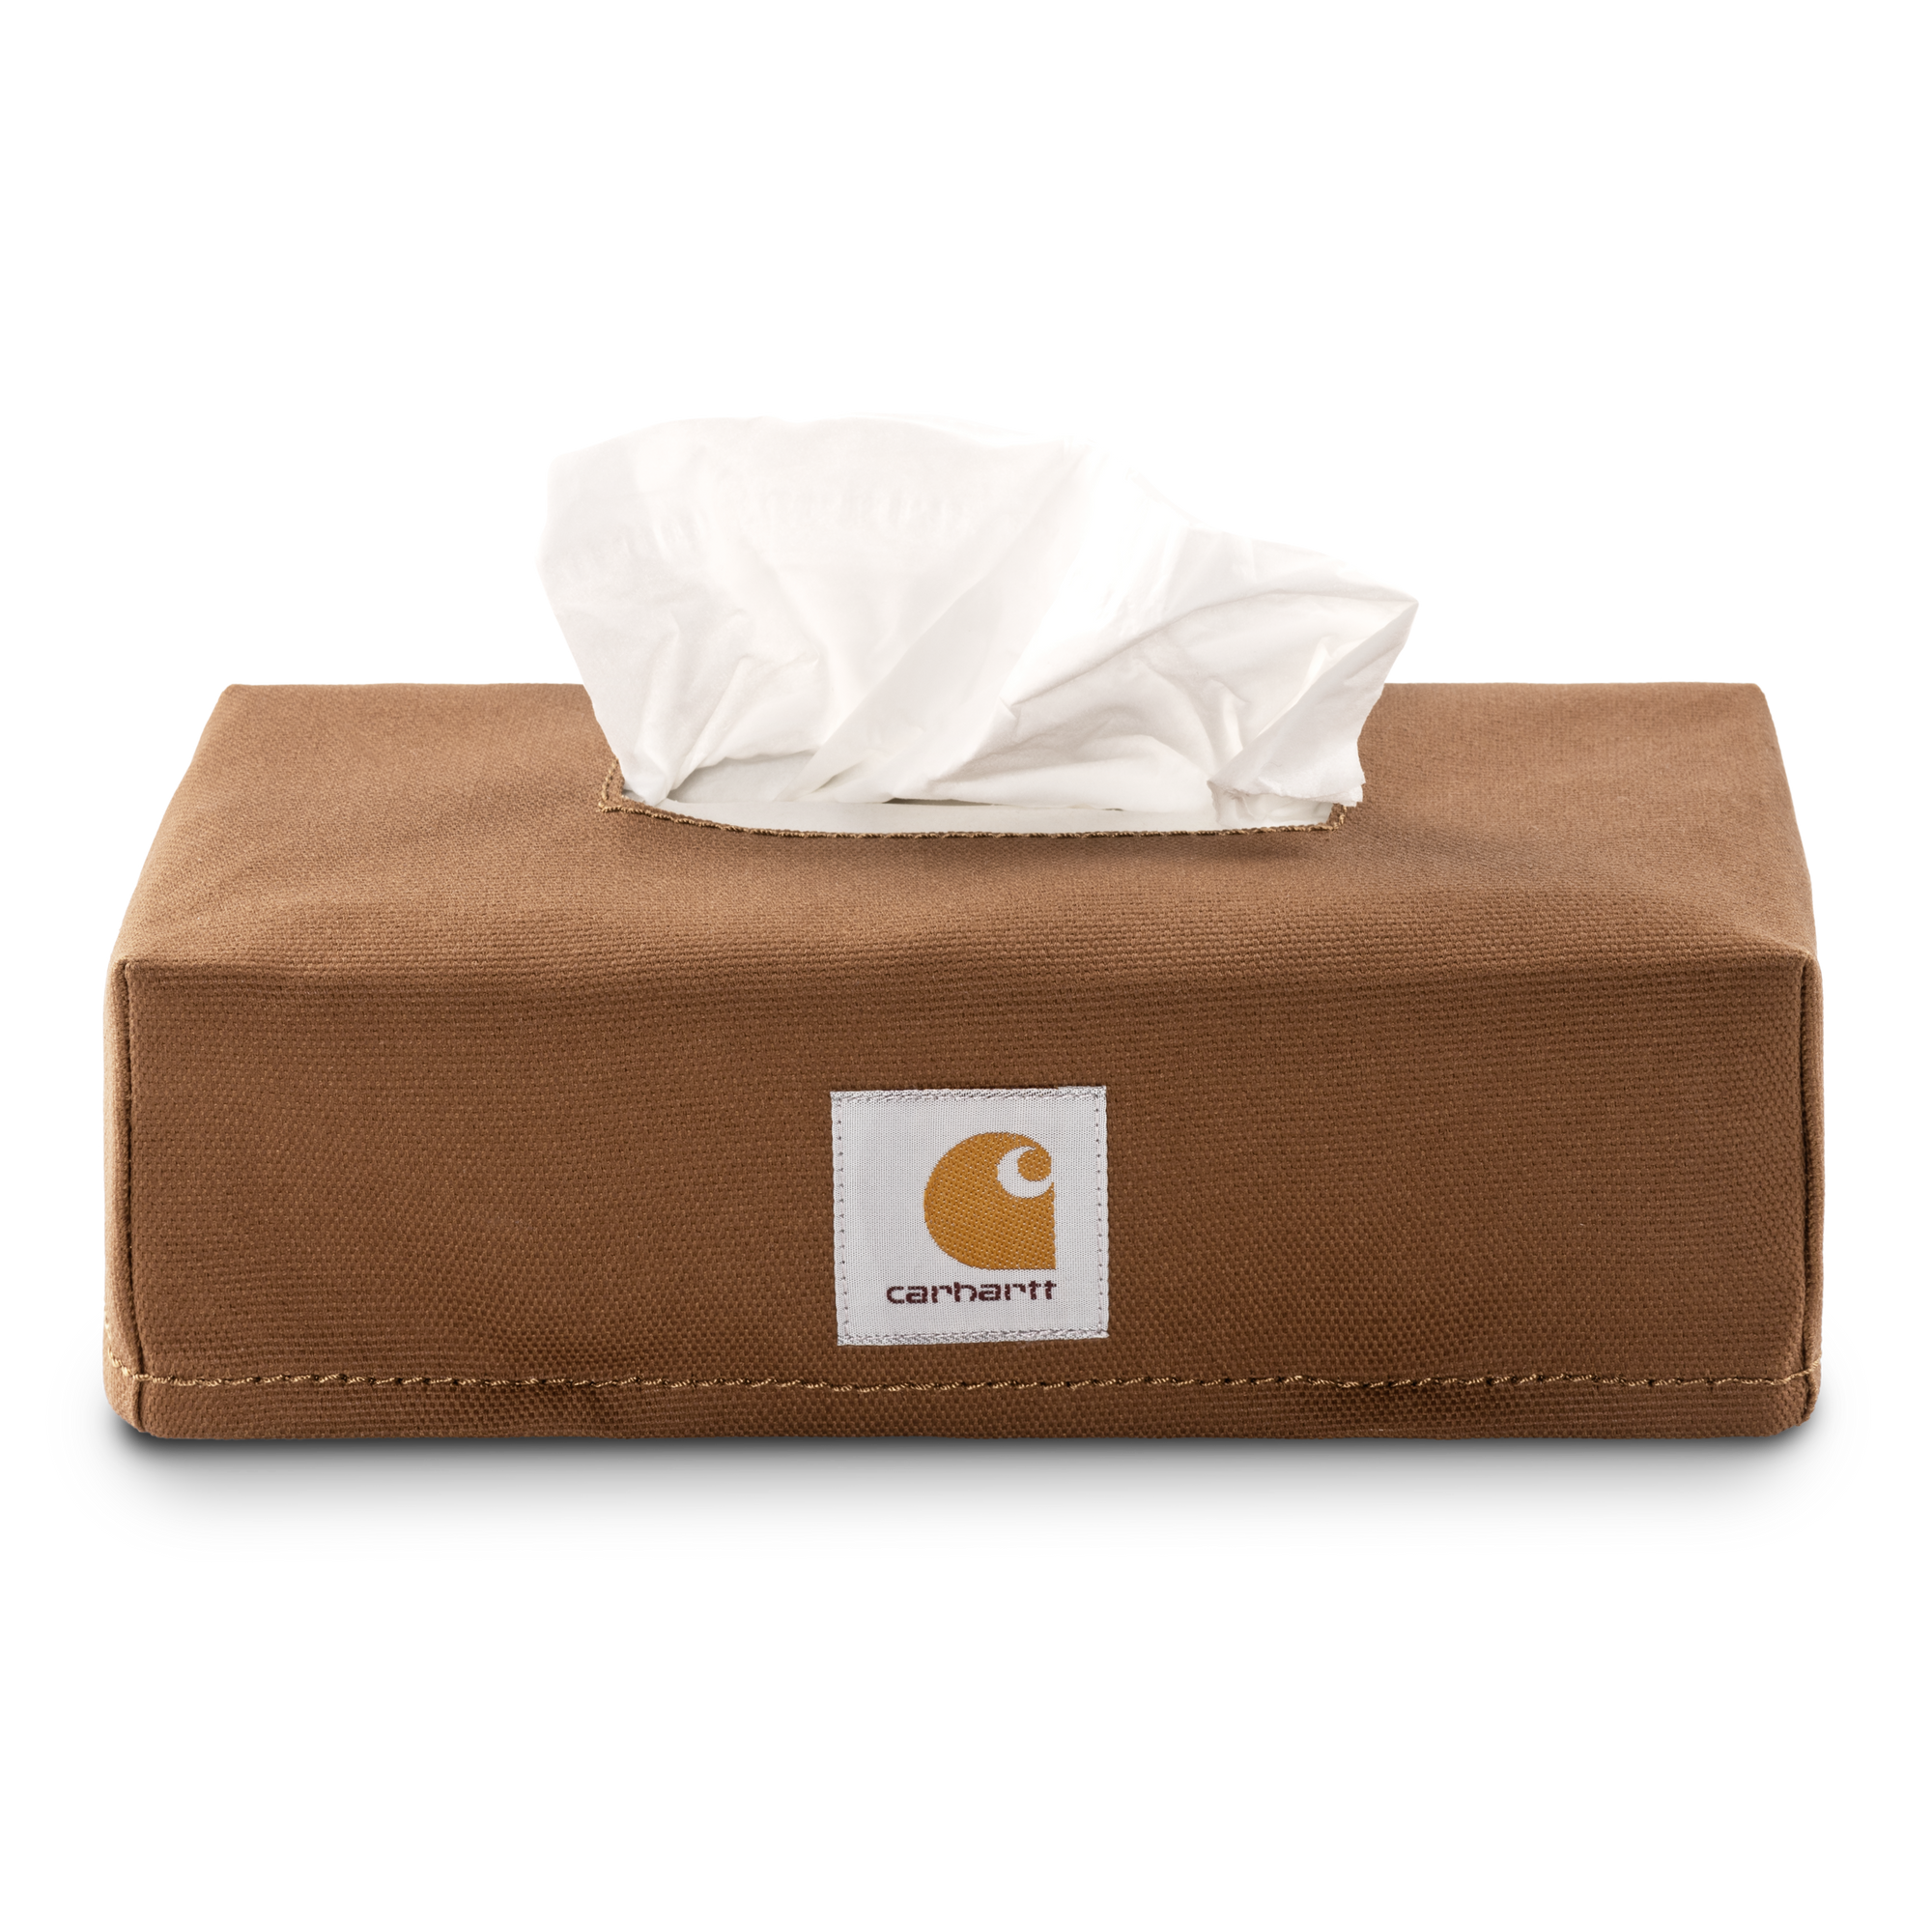 Carhartt WIP Tissue Box Cover - Hamilton Brown